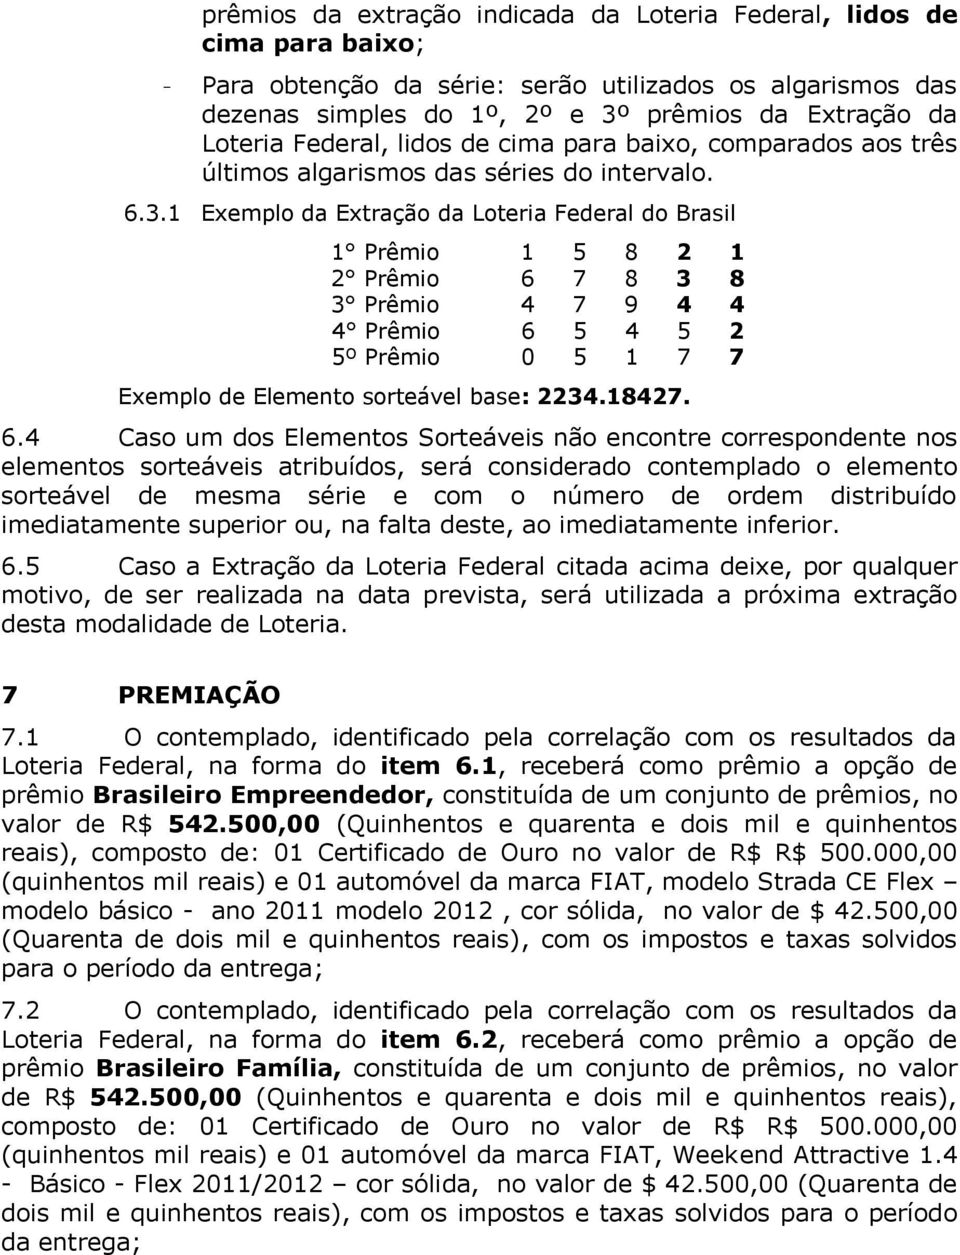 1 Exemplo da Extração da Loteria Federal do Brasil 1 Prêmio 1 5 8 2 1 2 Prêmio 6 